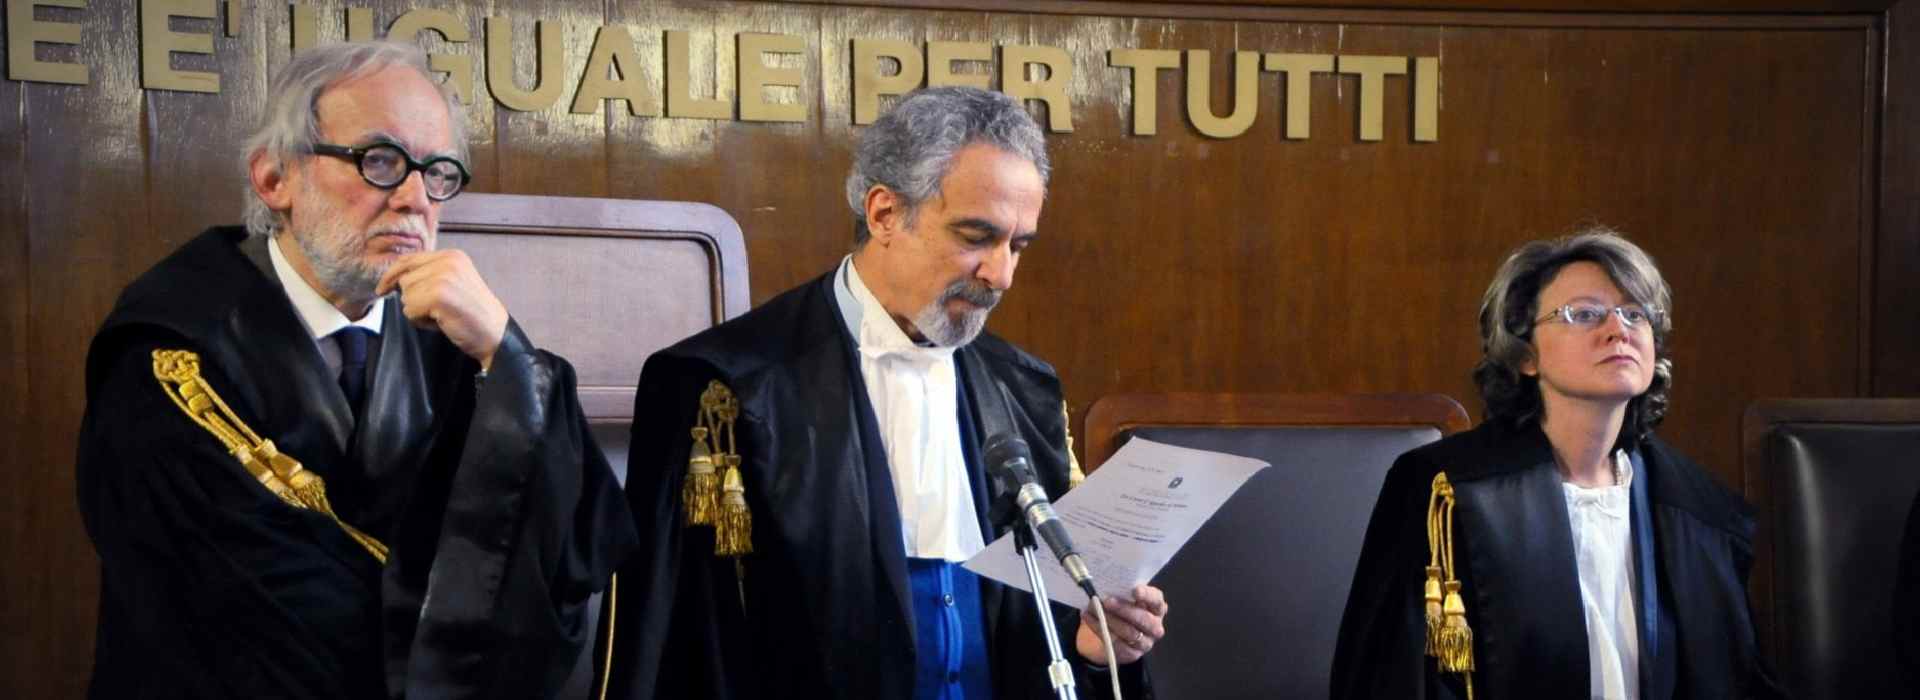 Piero Gamacchio, il giudice milanese che non paga ristoranti di lusso e boutique